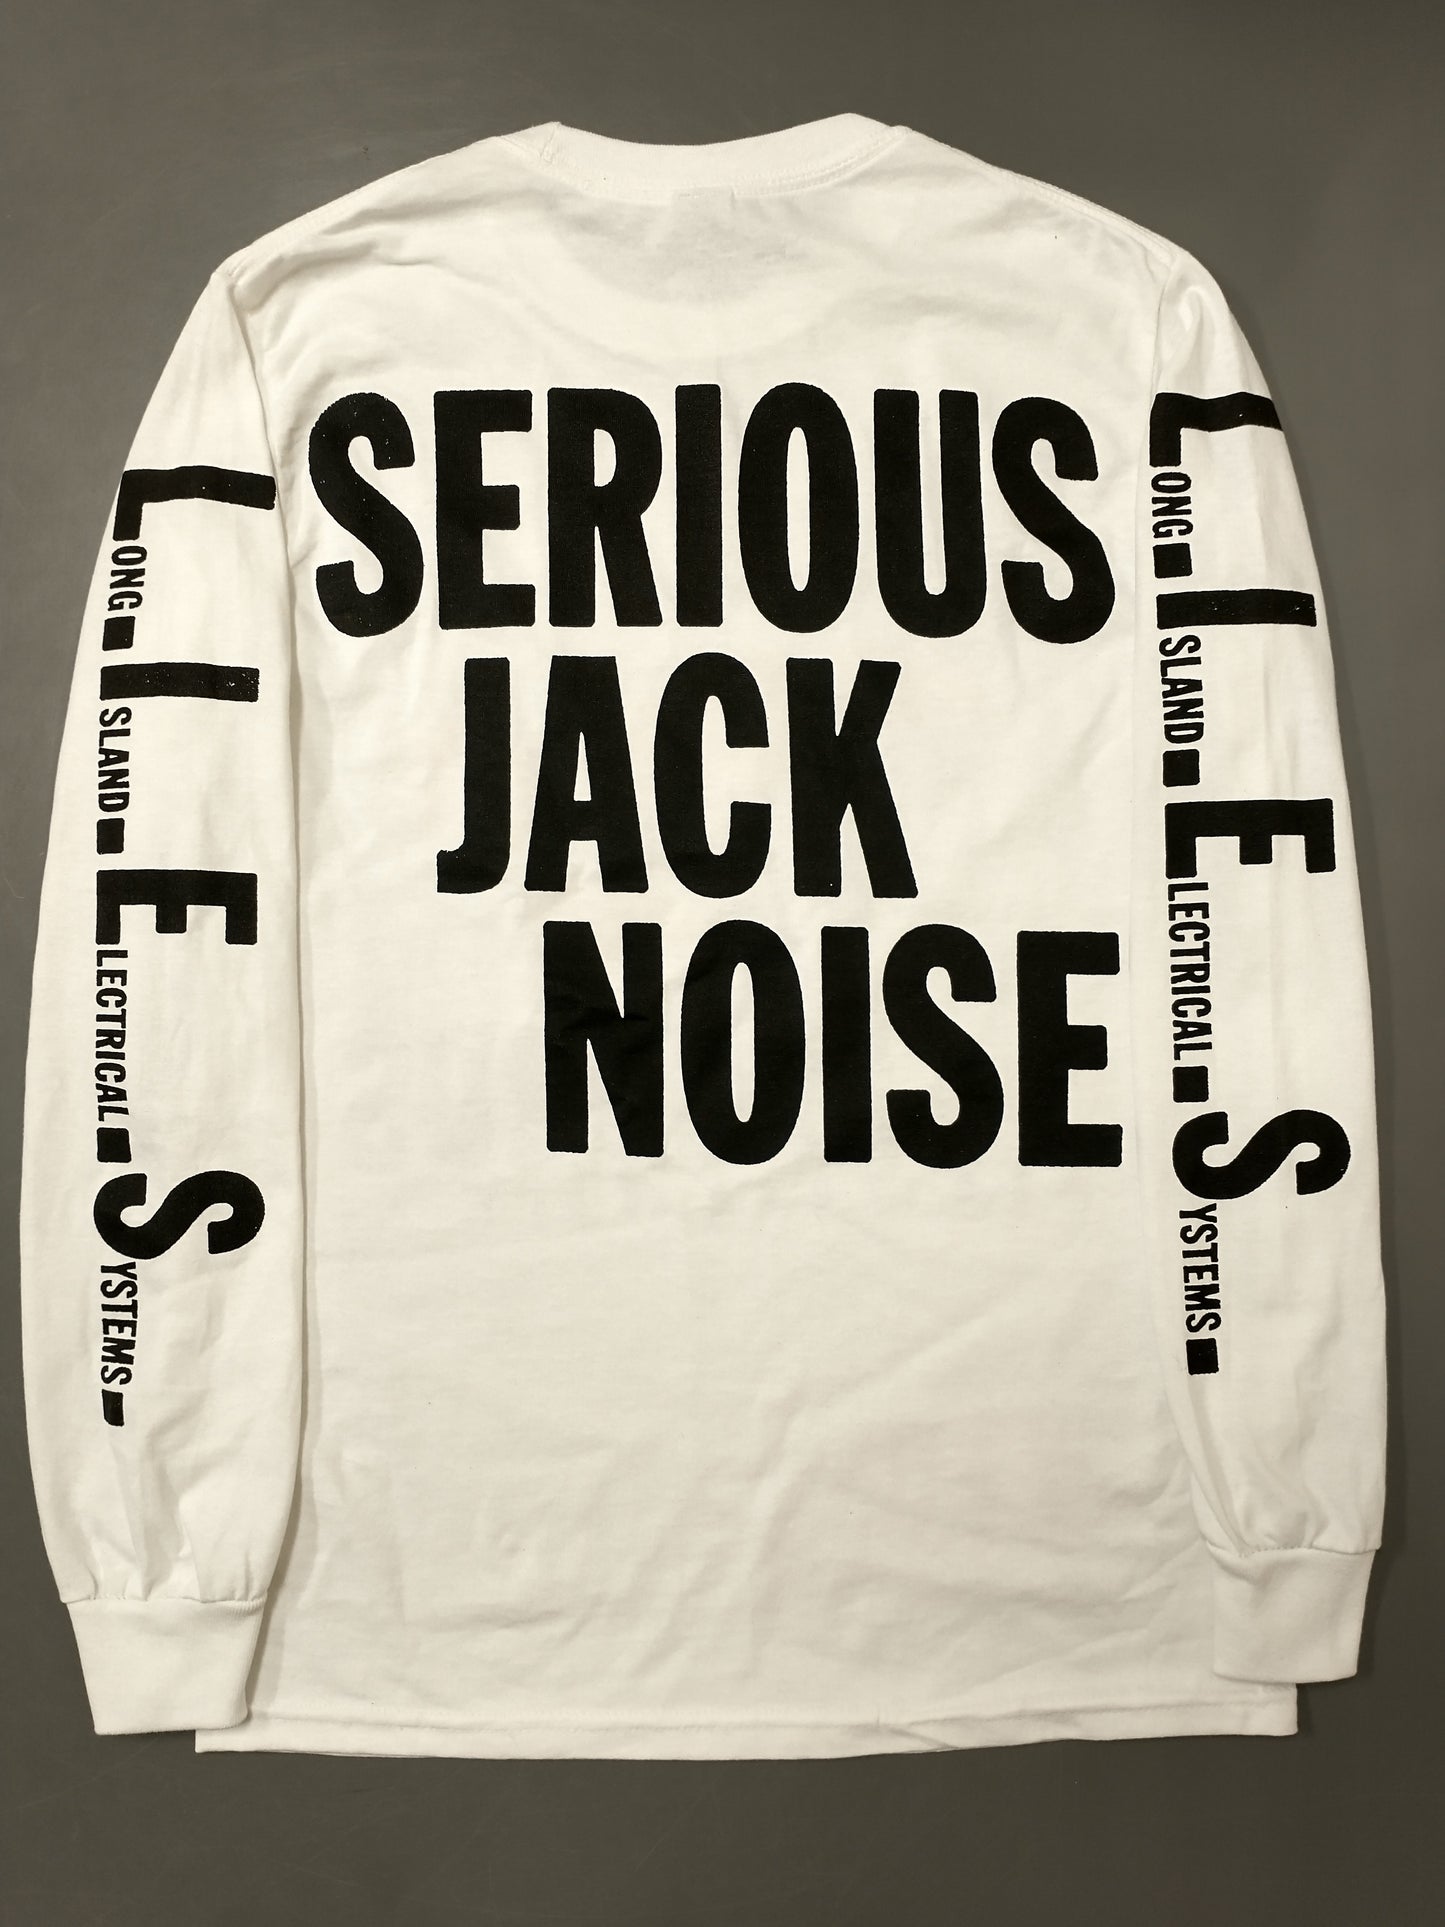 L.I.E.S. Records - SERIOUS JACK NOISE - L/S t-shirt - White